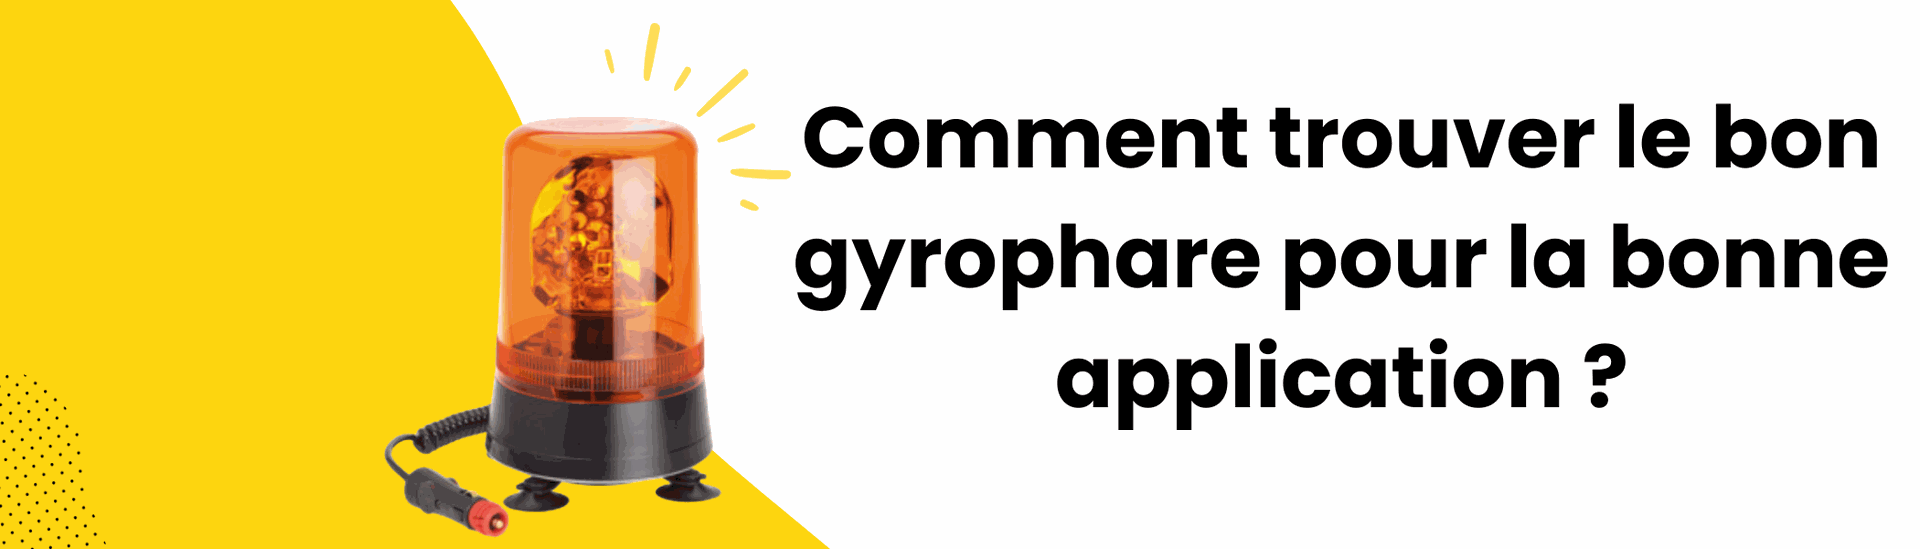 Comment trouver le bon gyrophare pour la bonne application ?